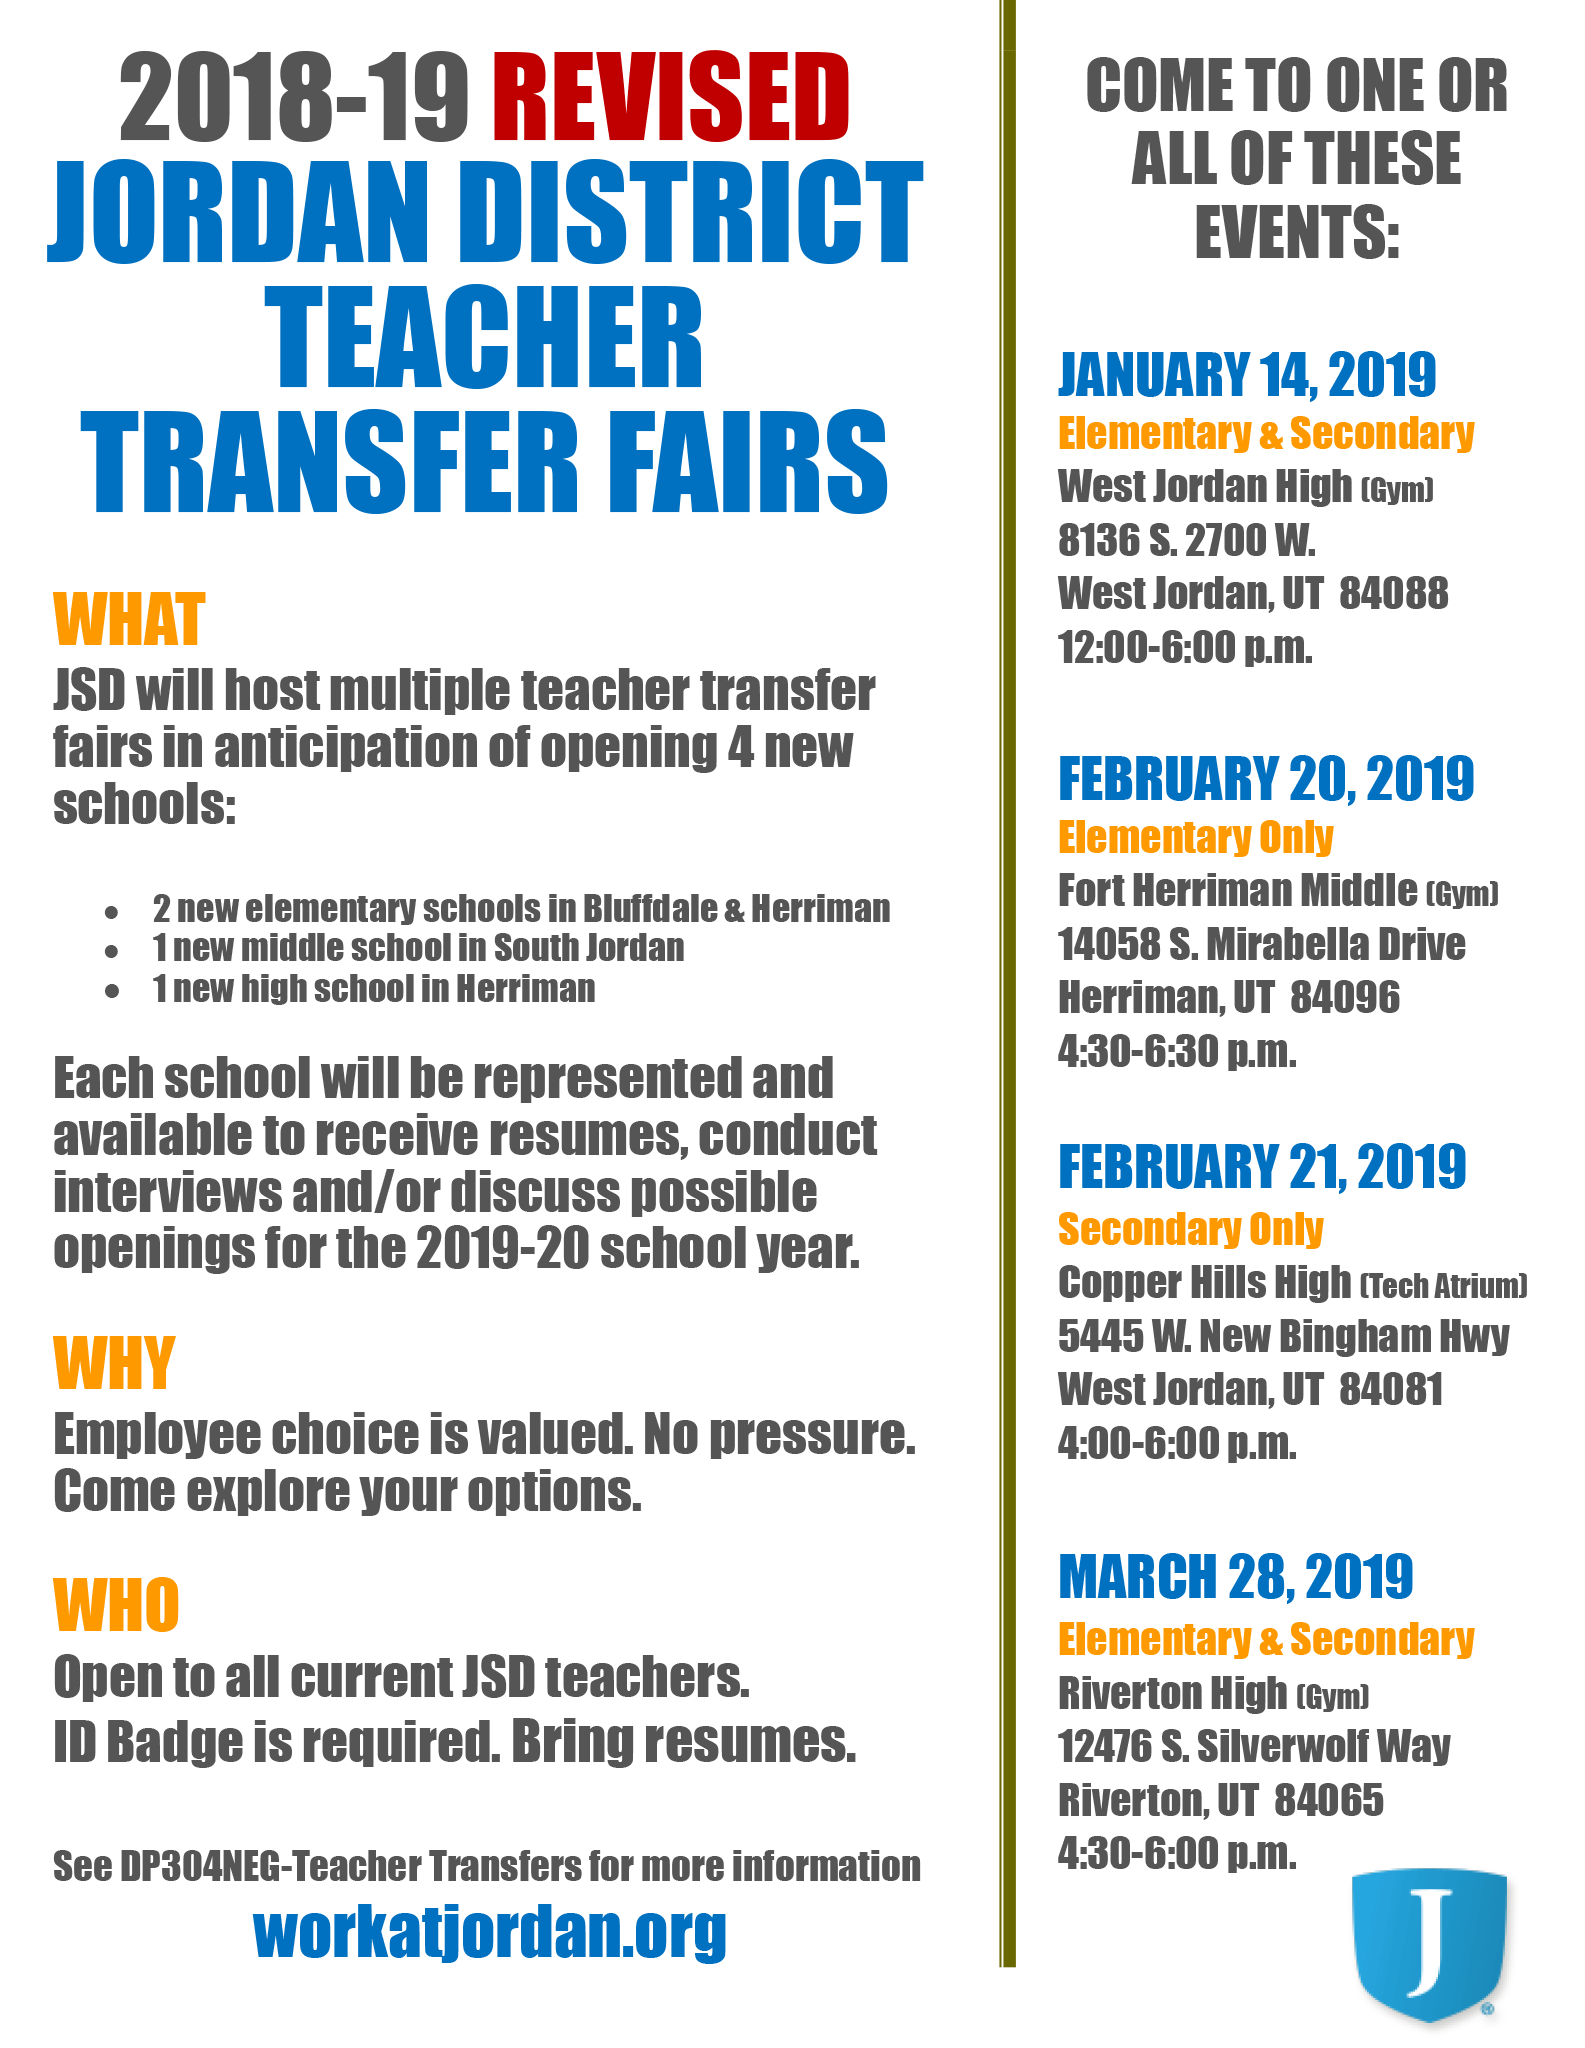 2018-19 Revised Teacher Transfer Fair Flyer